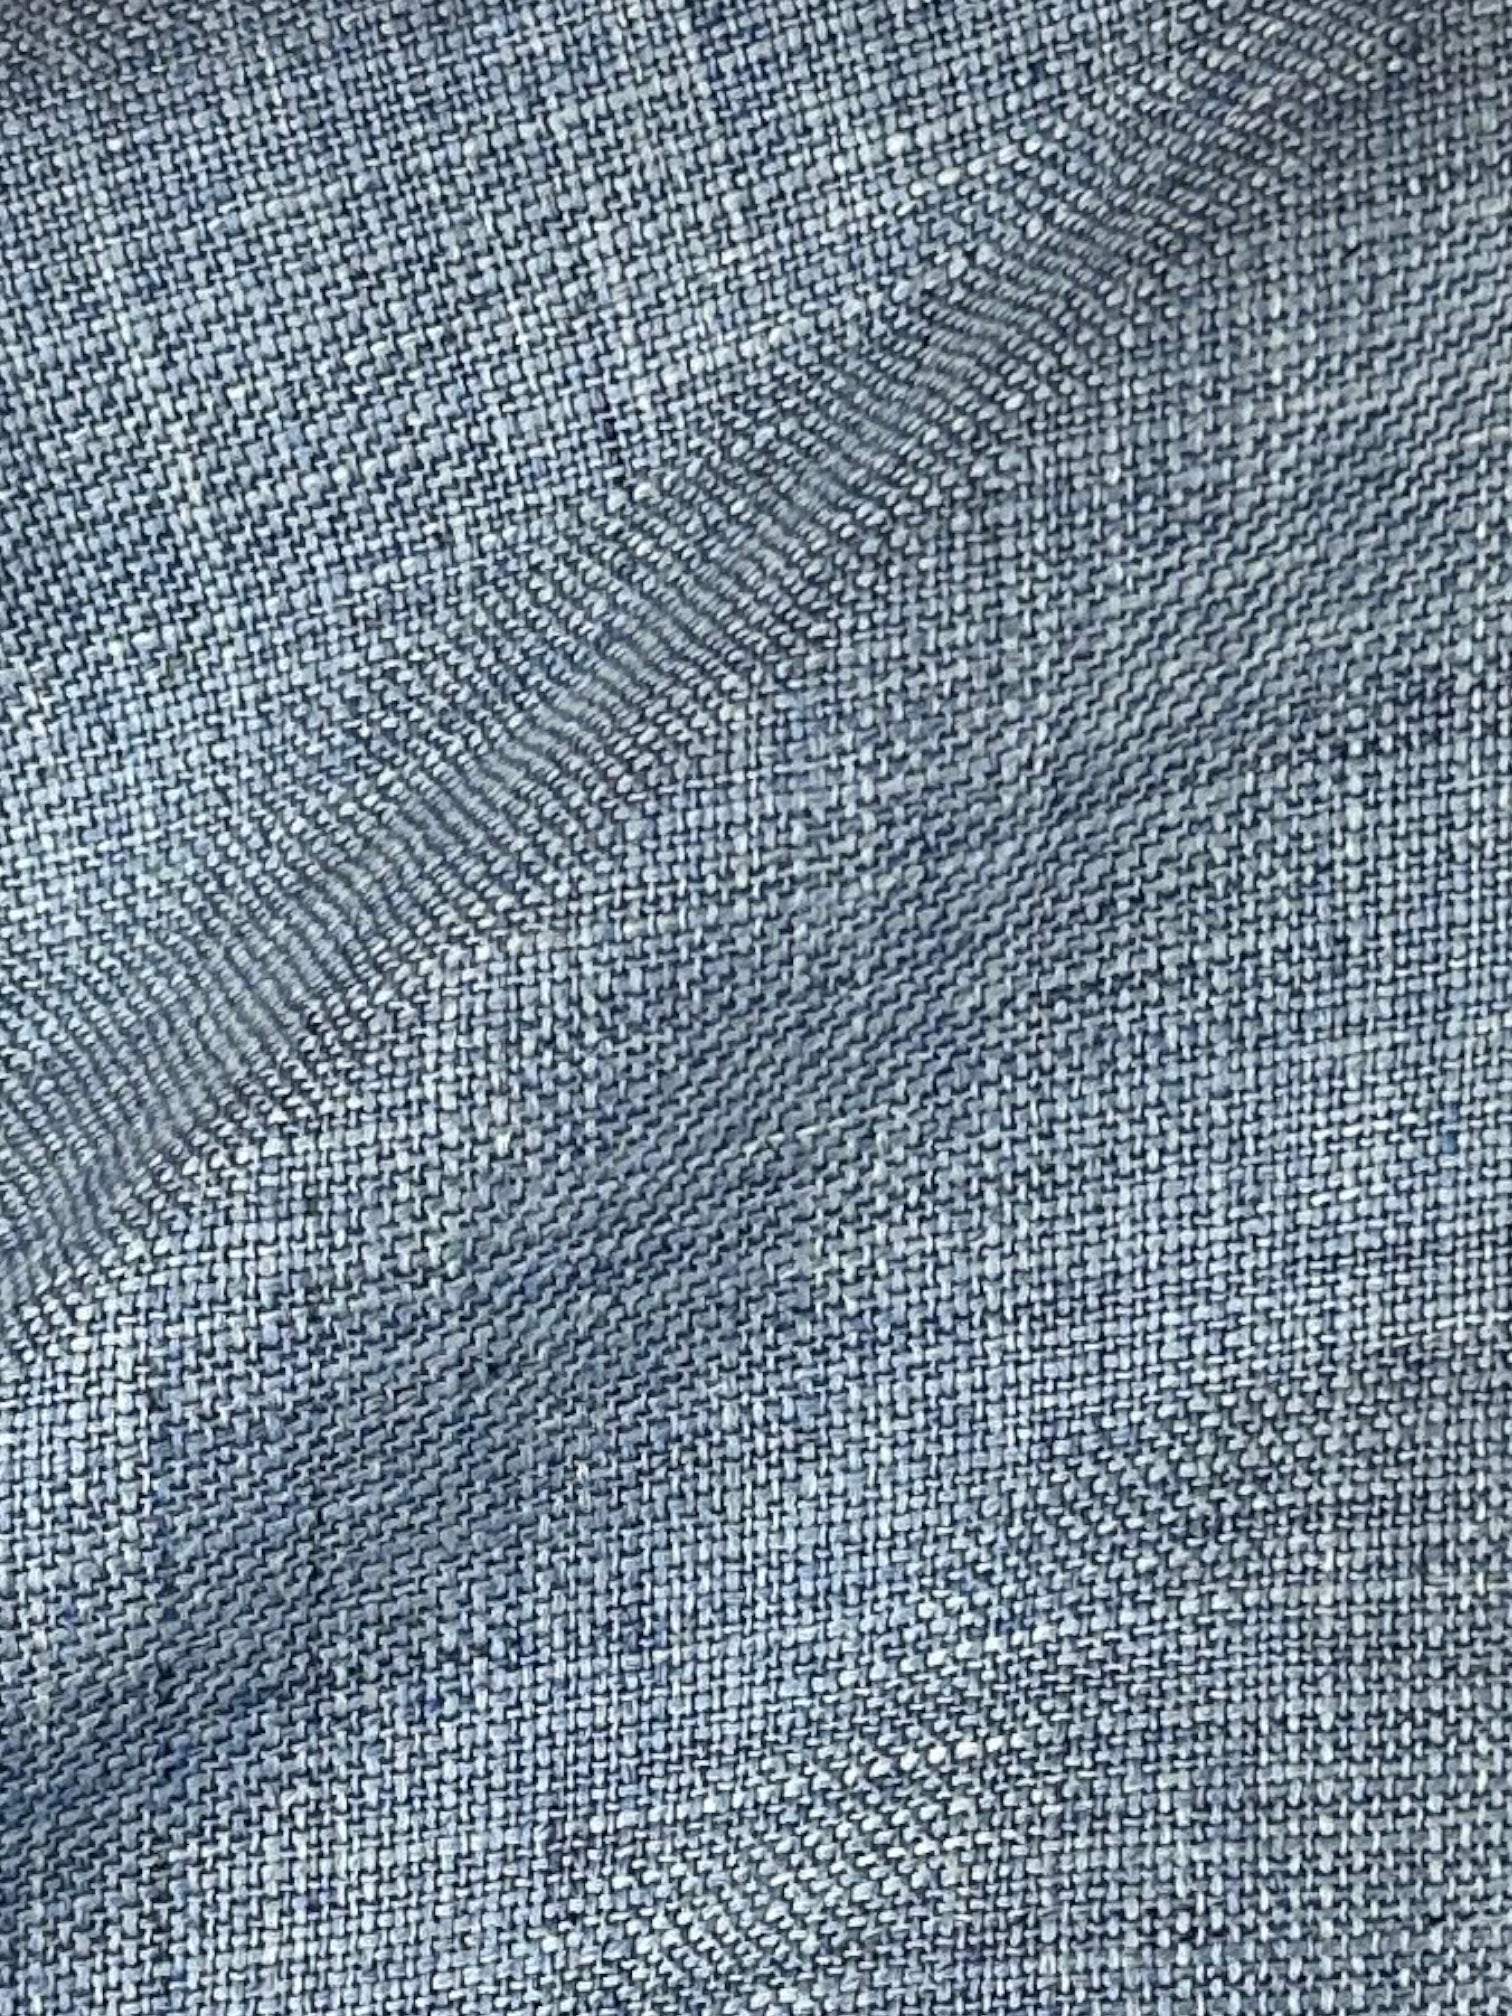 Canali Light Blue Wool, Linen & Silk Jacket